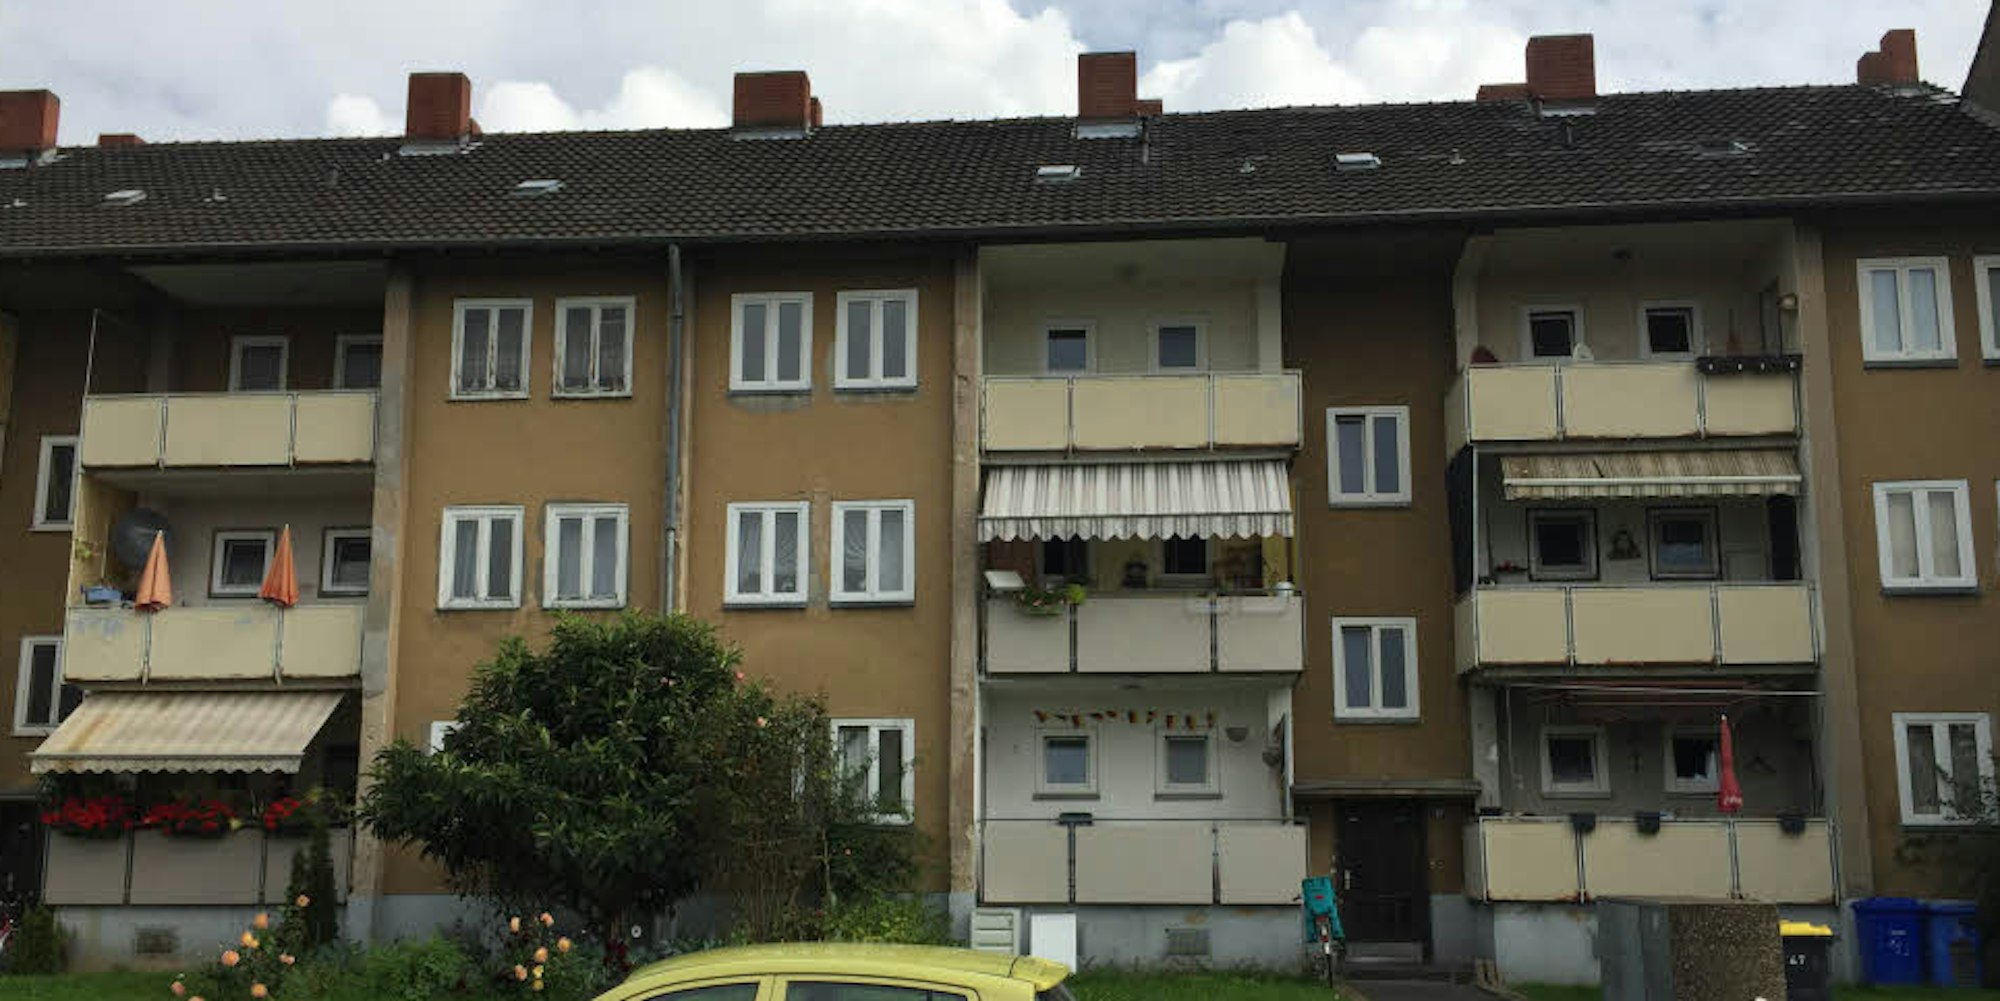 In den alten Häusern an der Ahrstraße sind schon viele Wohnungen leer. Zum Teil sind sie auch von Flüchtlingen bewohnt.